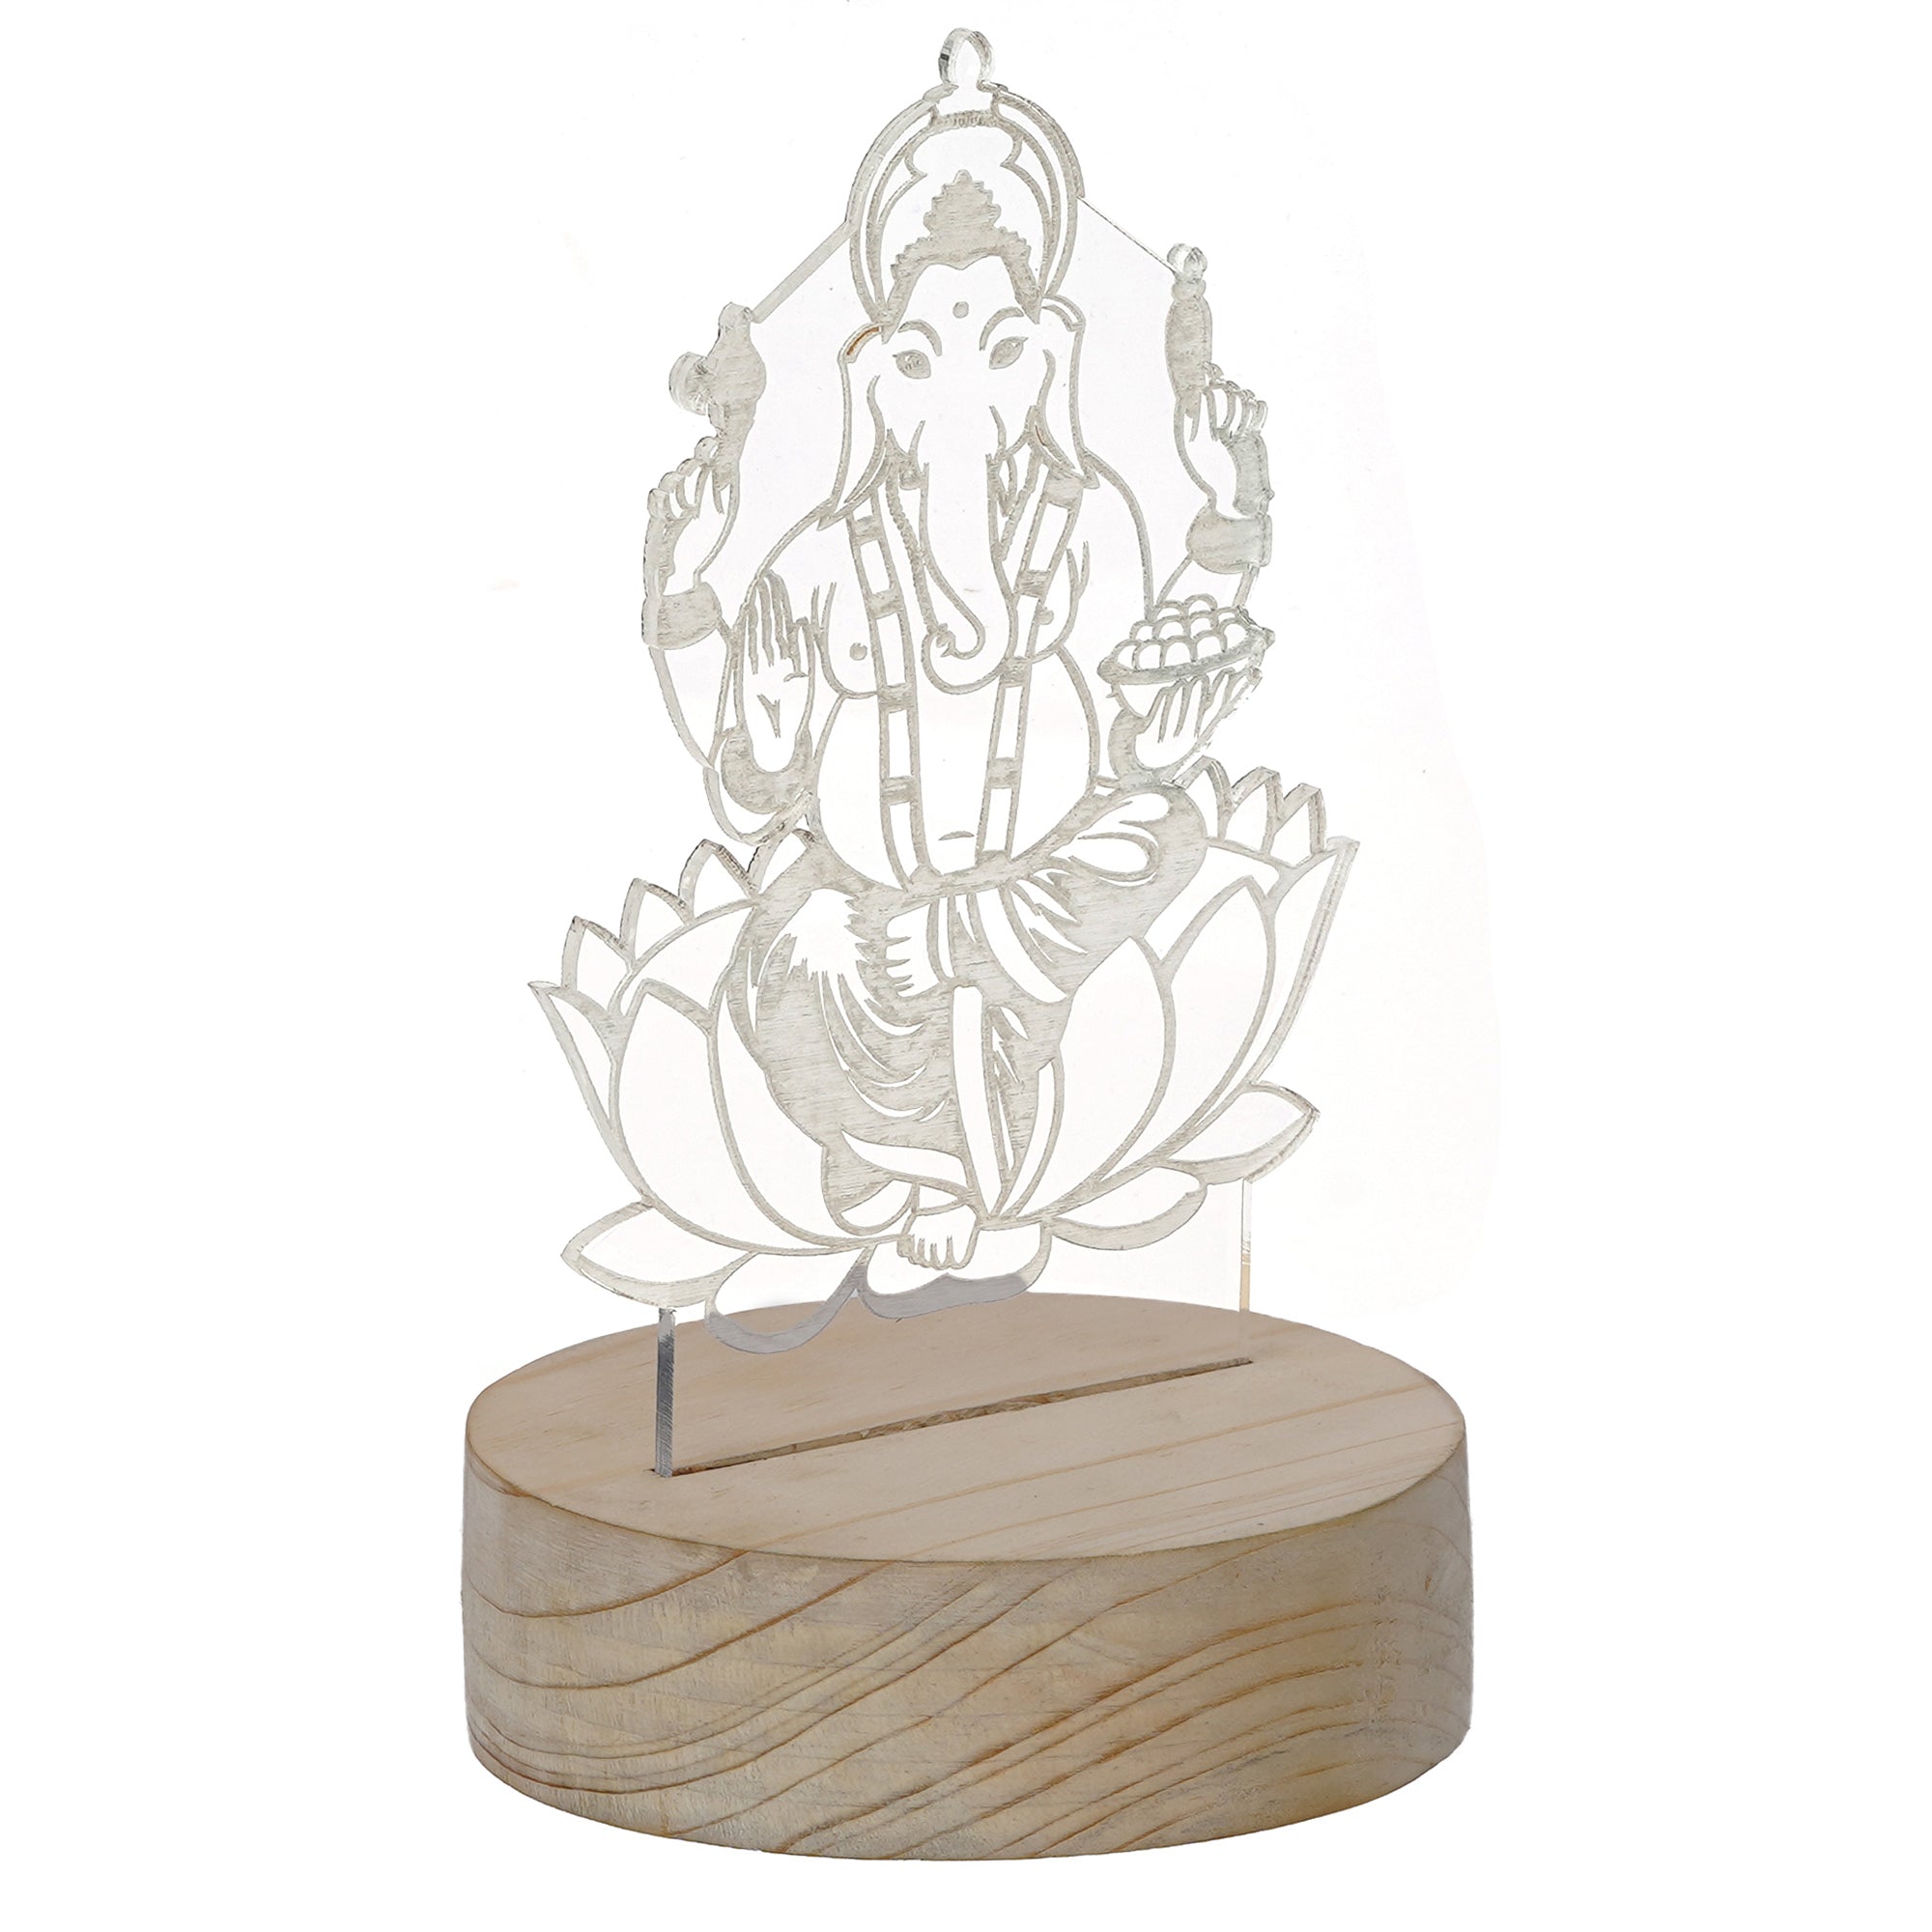 Lord Ganesha Design Carved on Acrylic & Wood Base Night Lamp 4